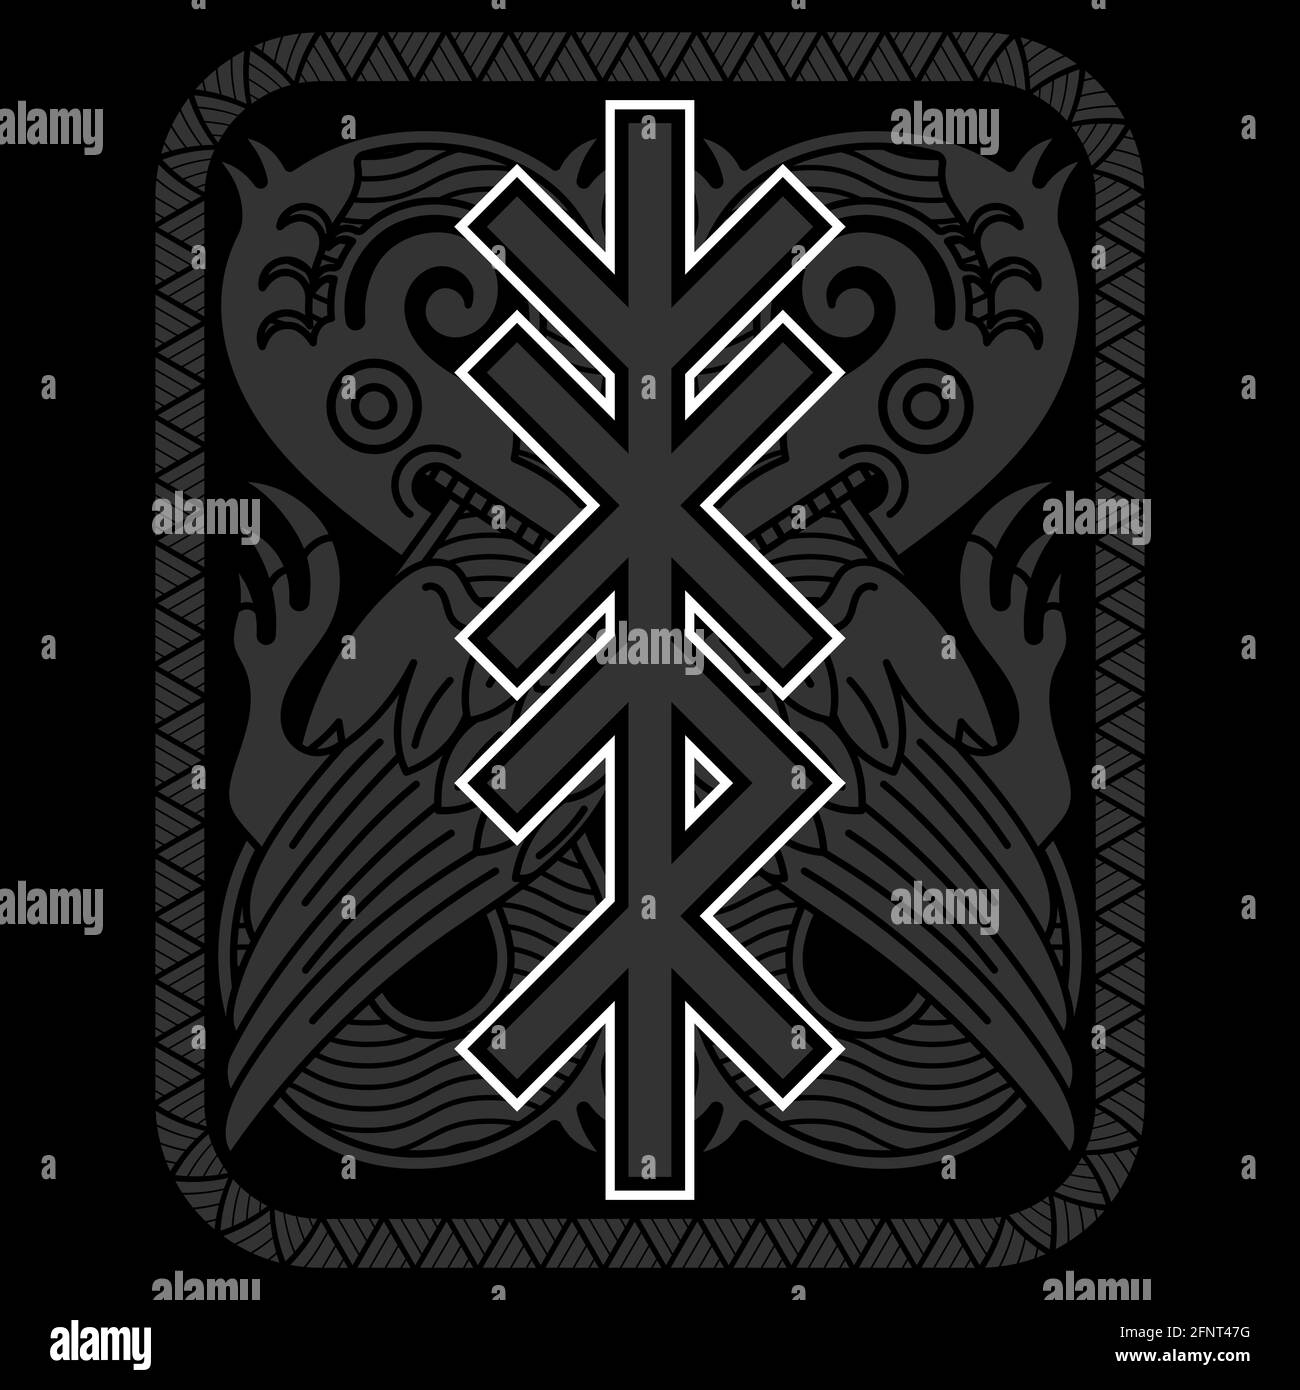 Design vichingo scandinavo. Animale mitologico disegnato in stile antico norreno e rune settentrionali, isolato su nero, illustrazione vettoriale Illustrazione Vettoriale